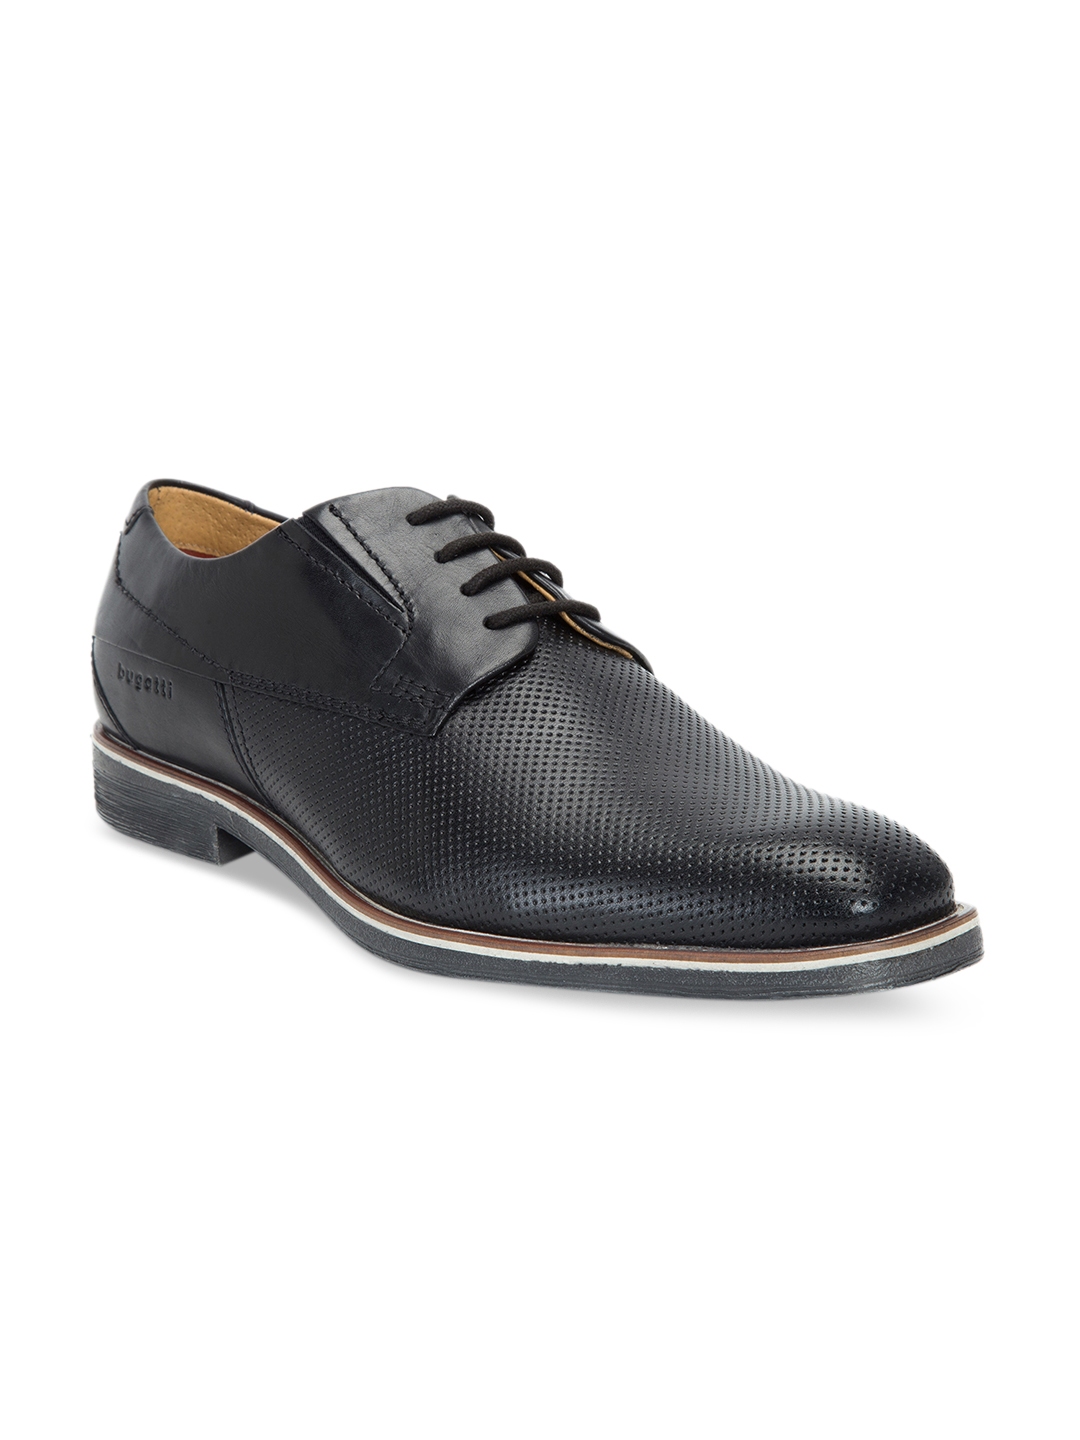 Buy Bugatti Men Black Leather Formal Derbys - Formal Shoes for Men ...